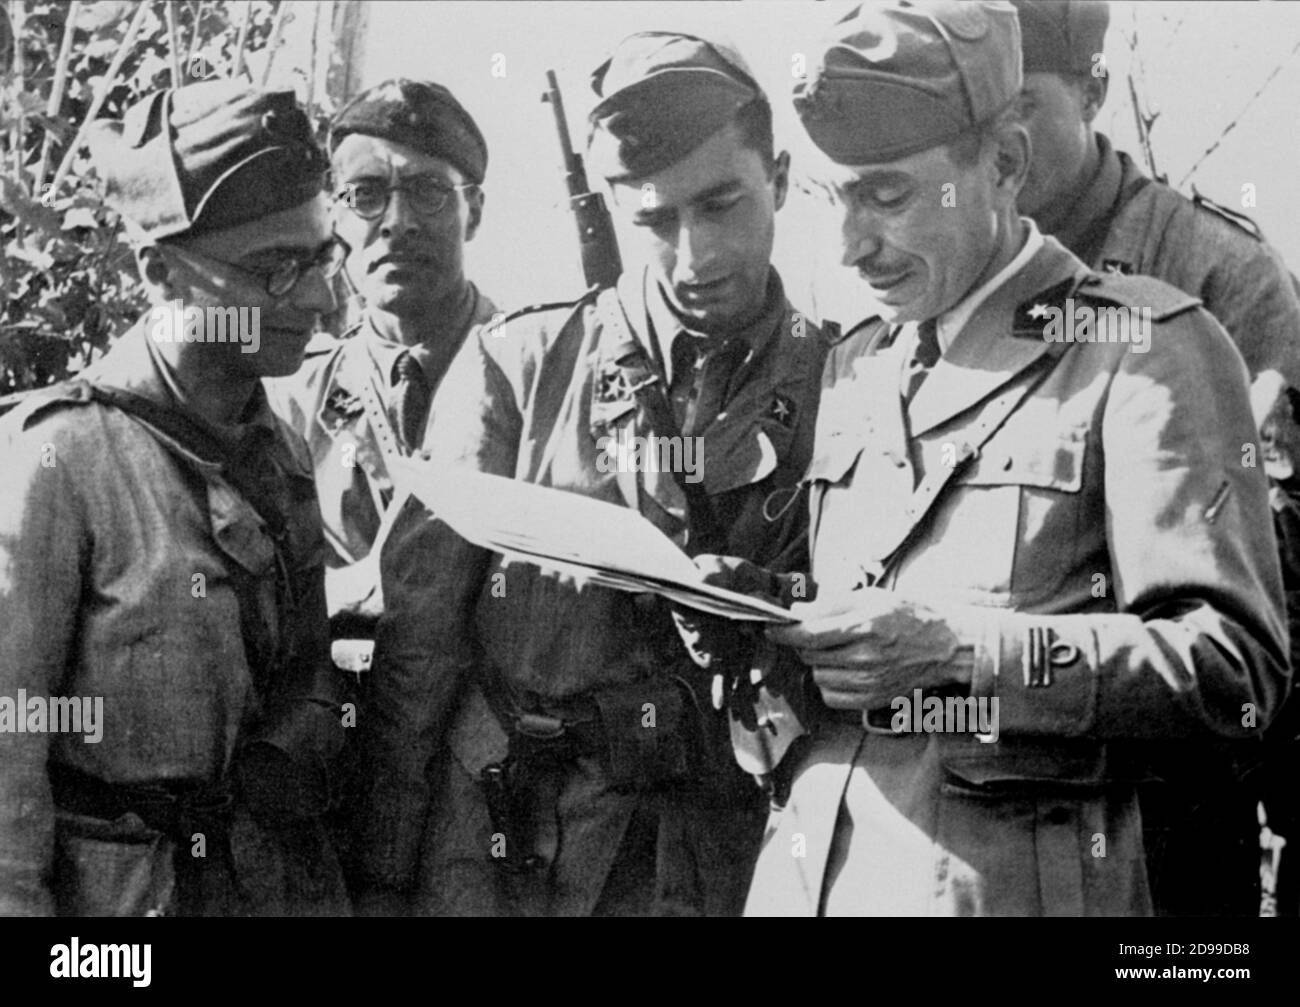 1942 c., ITALIE : le réalisateur italien MICHELANGELO ANTONIONI ( né à Ferrara , 1912 ) quand était militaire pendant la Seconde Guerre mondiale , officier de télégraphiste - Seconda Guerra Mondiale - PERSONNALITÉ quand était jeune - personalita' celebita' da giovane - giovani - CINÉMA - FILM - REGISTA CINEMATOGRAFICO - WW2 - SECONDA GUERRA MONDIALE - uniforme miliaire - divisa uniforme militare --- ARCHIVIO GBB Banque D'Images